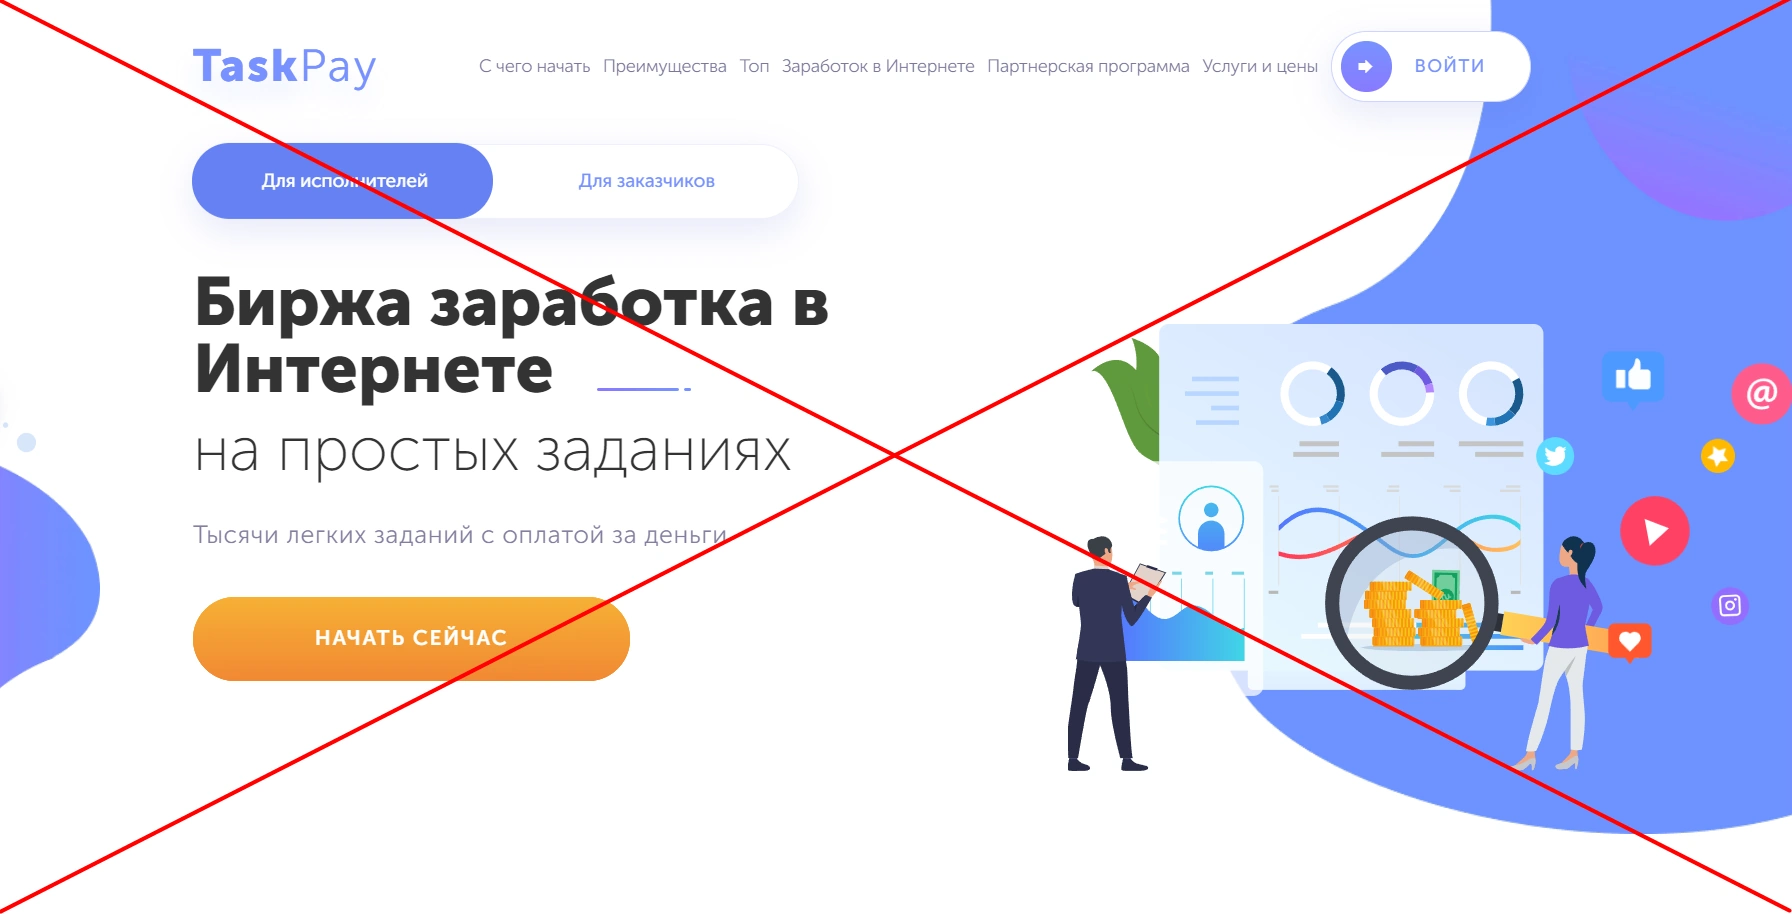 TaskPay - обзор и отзывы о заработке на taskpay.ru